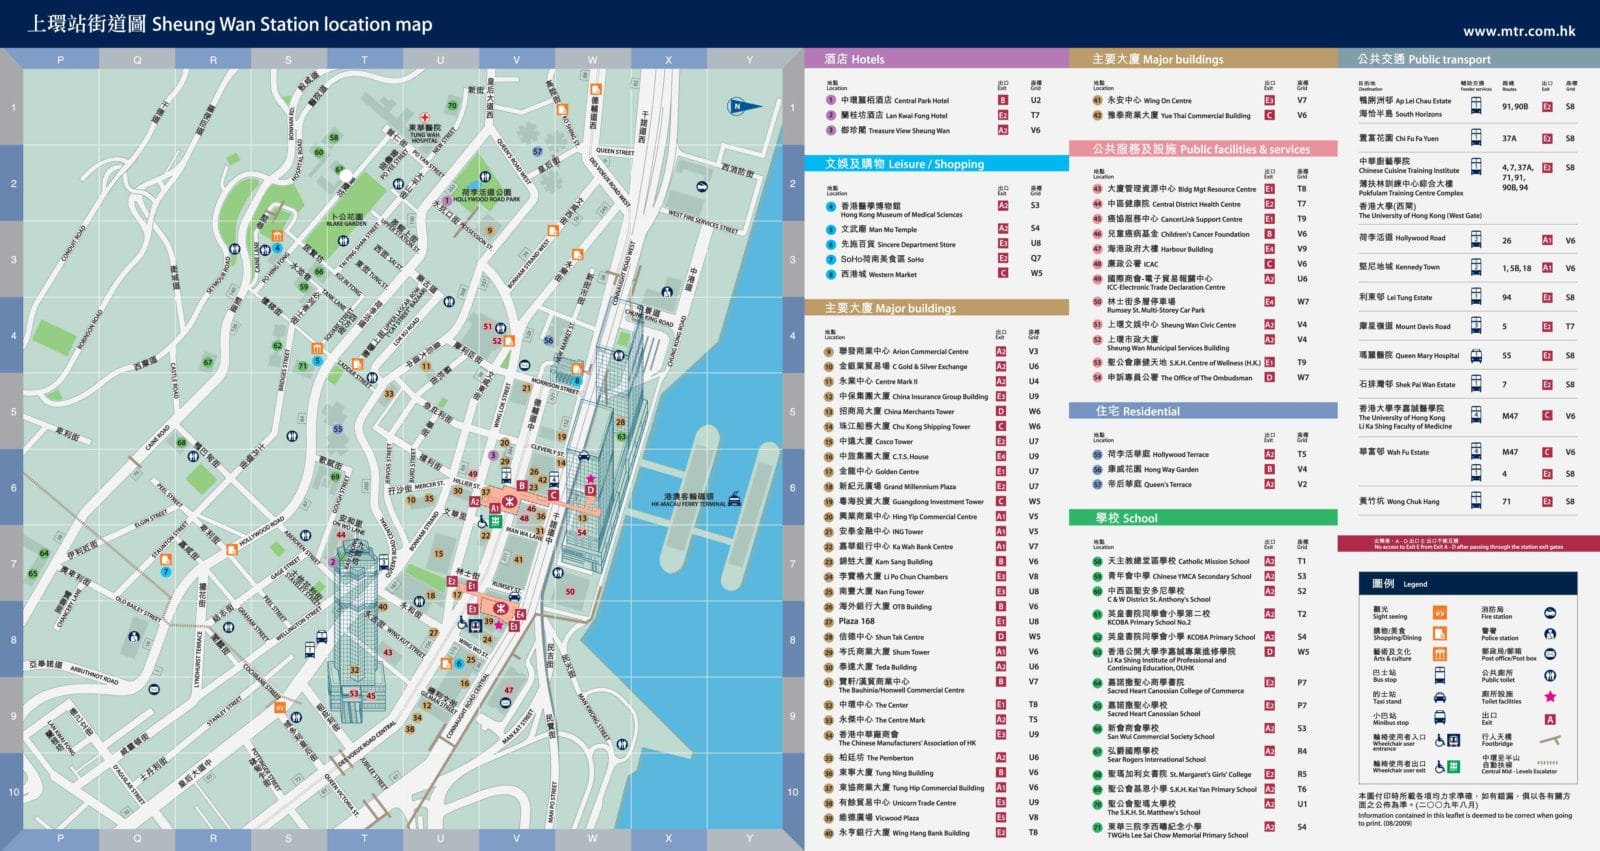 香港:上环地铁站区域图2012-2013